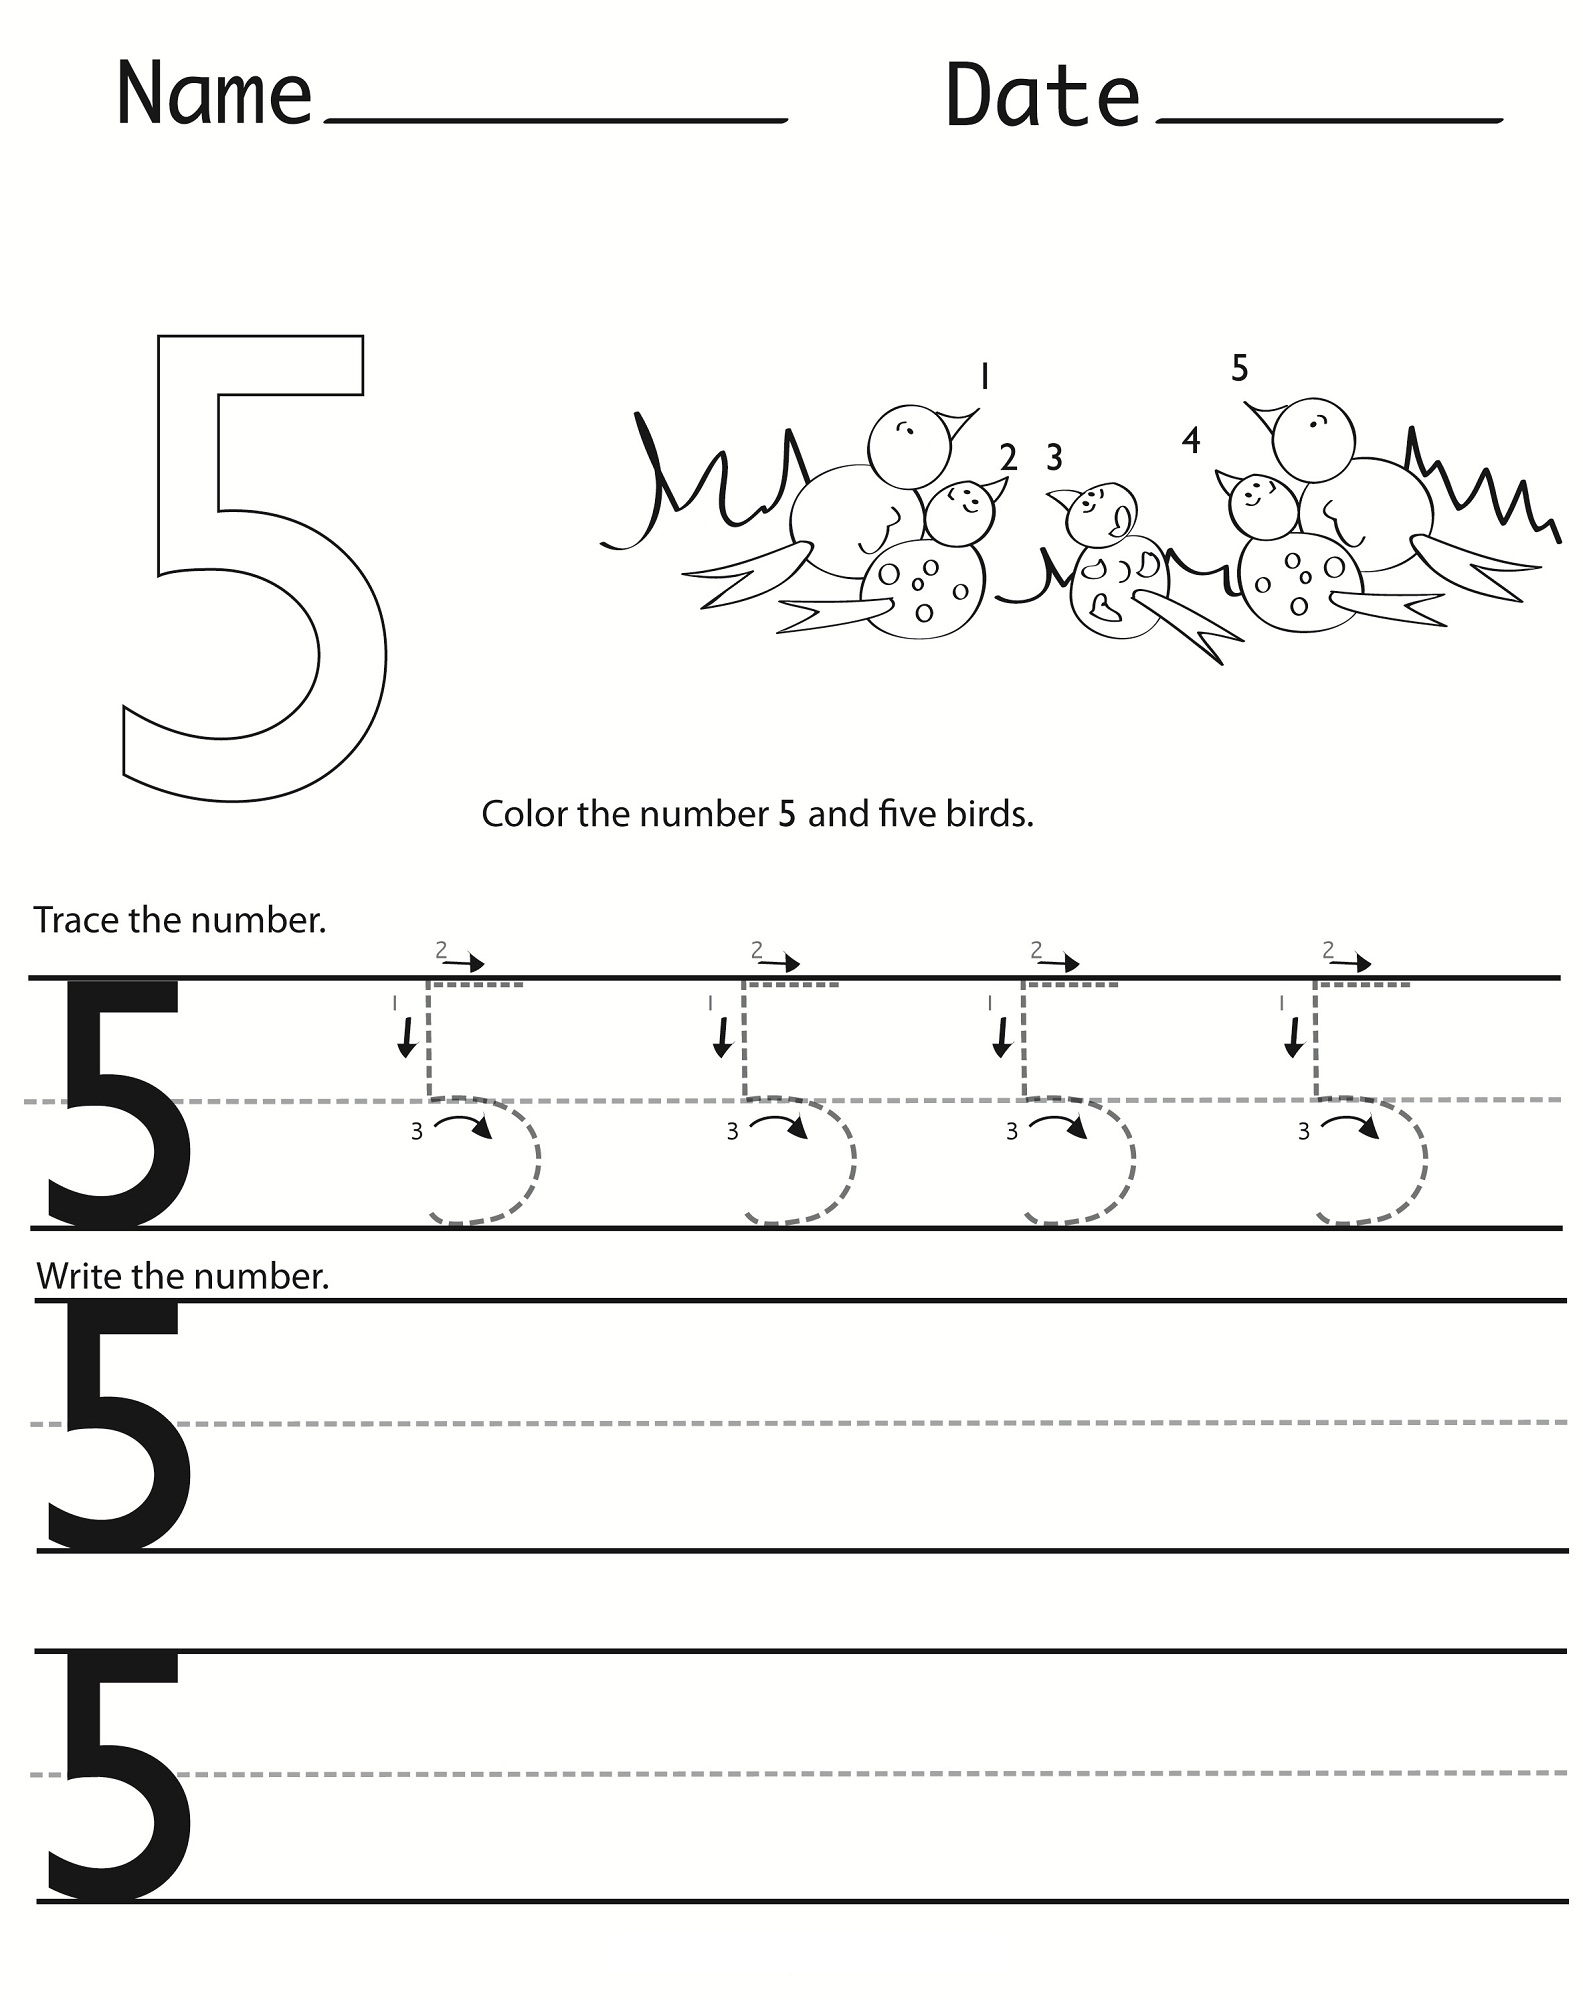 Free Printable Tracing Number 5 Worksheets Kids Worksheets Printables Number 5 Tracing 